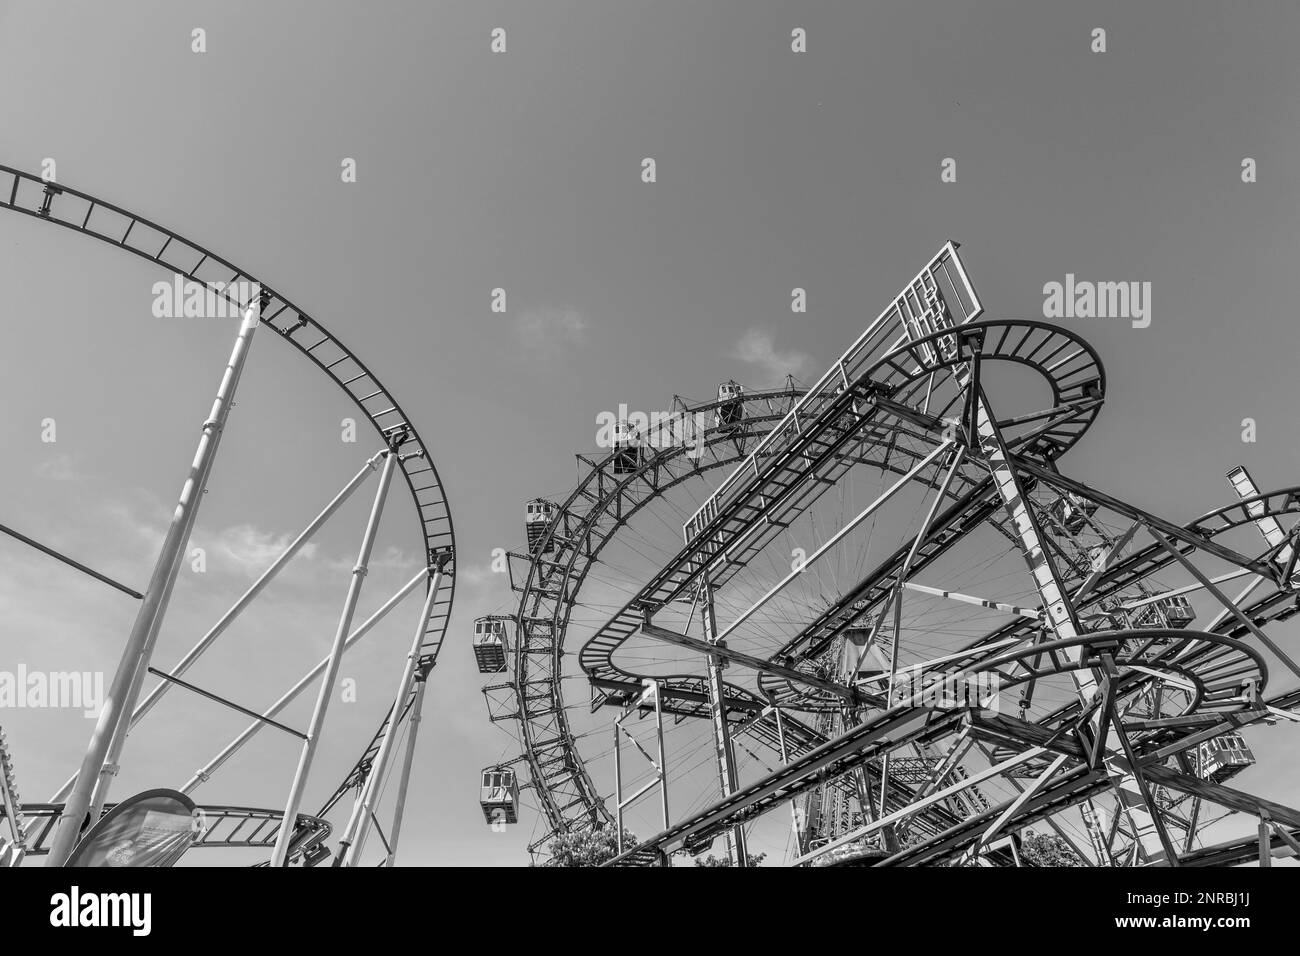 WIEN, ÖSTERREICH - APR 25, 2015: Blick auf das Wiener Riesenrad im Prater von außerhalb des Parks. Das große Rad wurde 1897 von den Engländern e gebaut Stockfoto